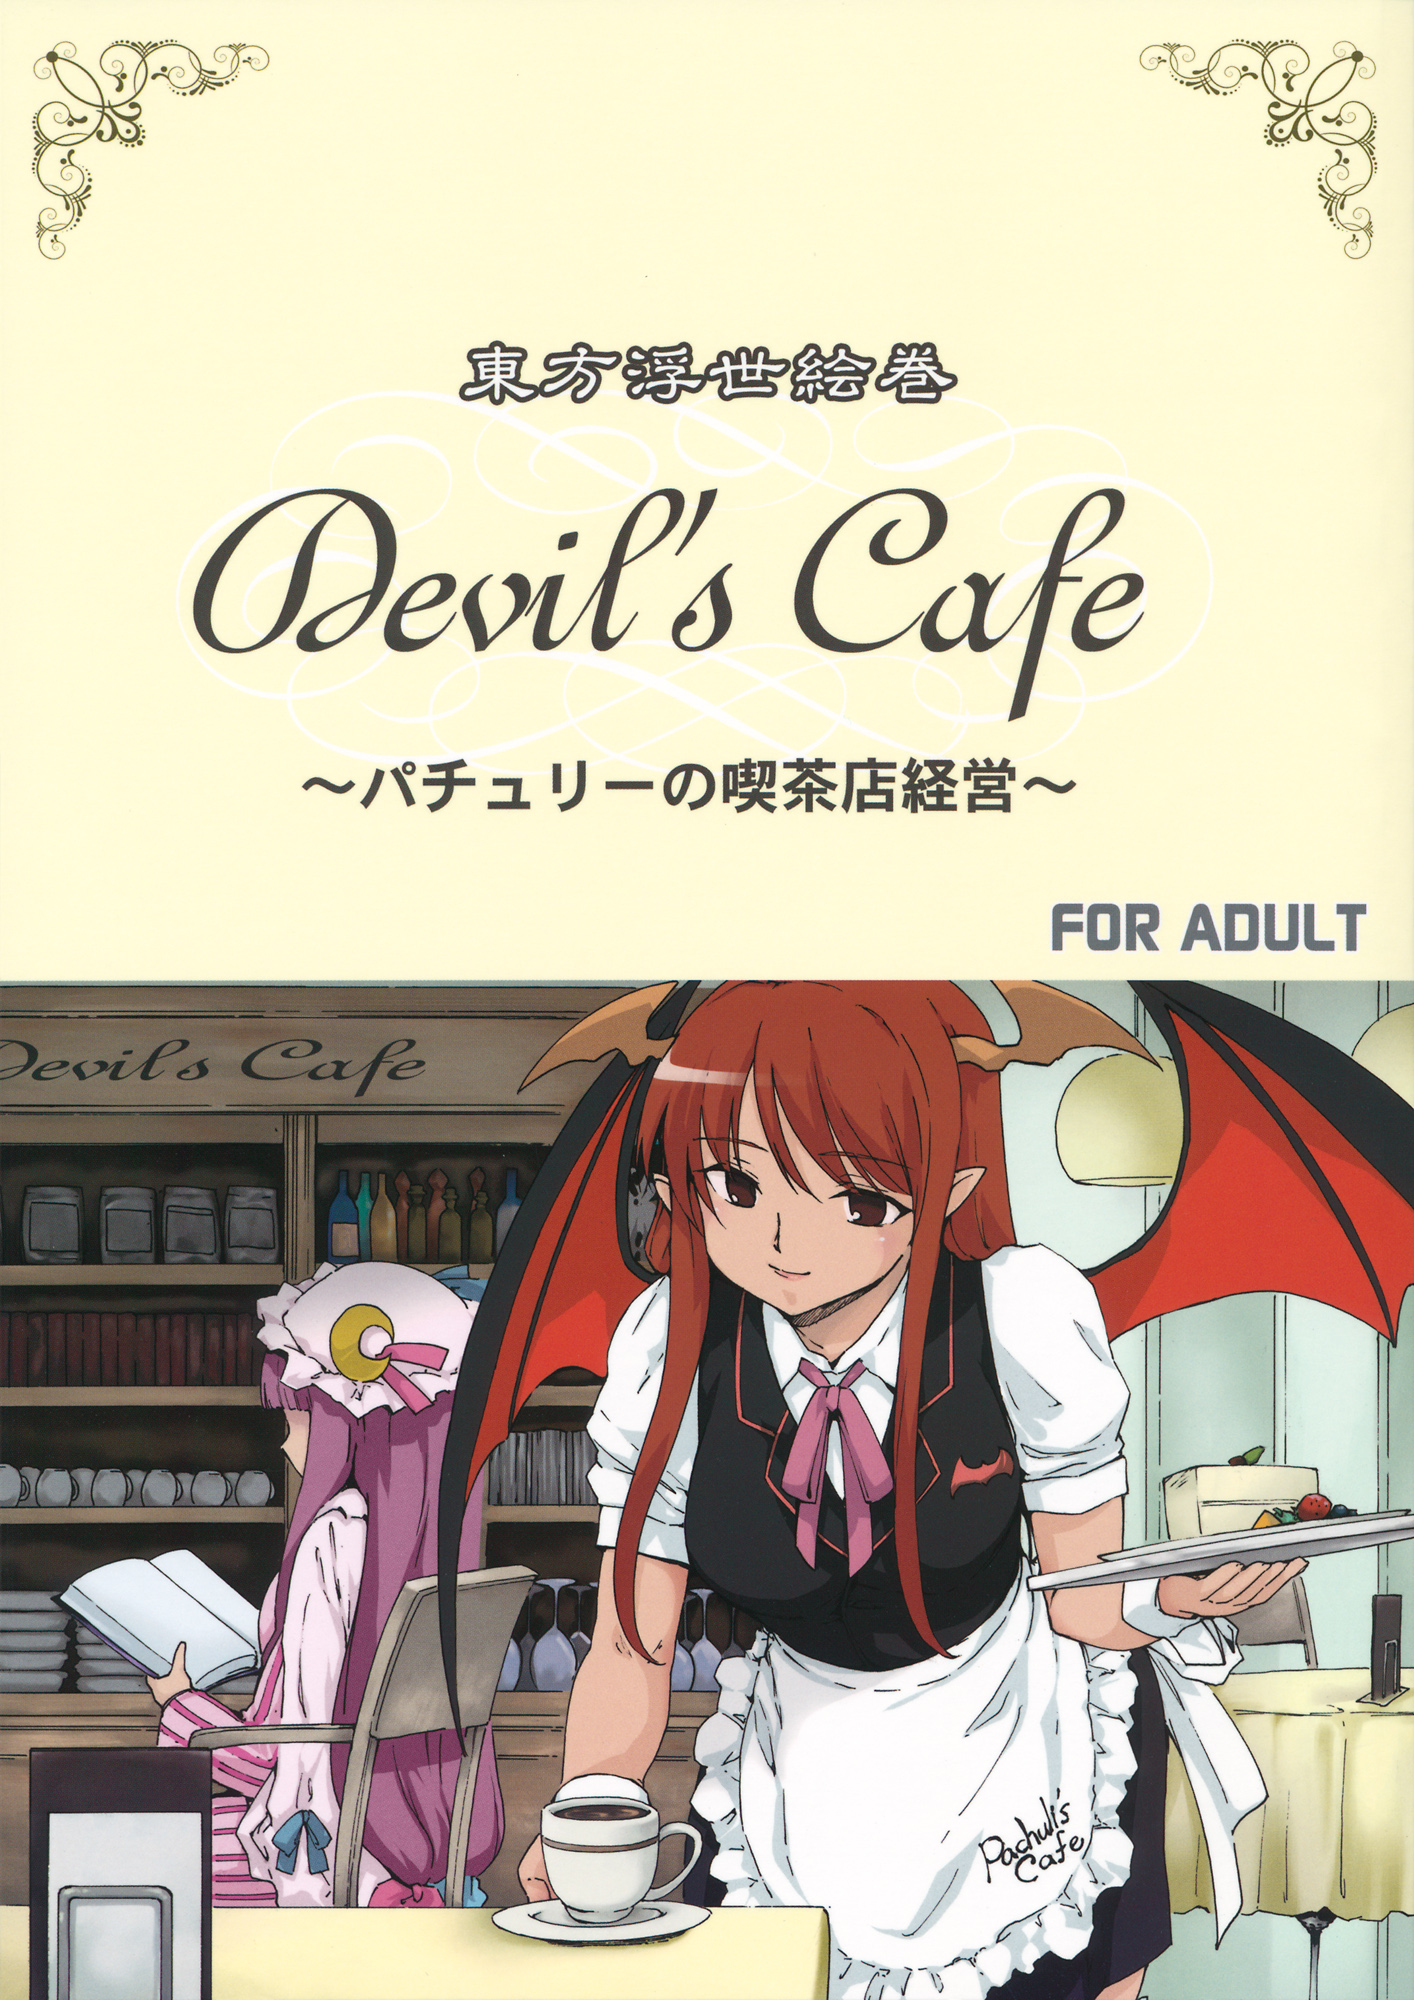 devils cafe 001